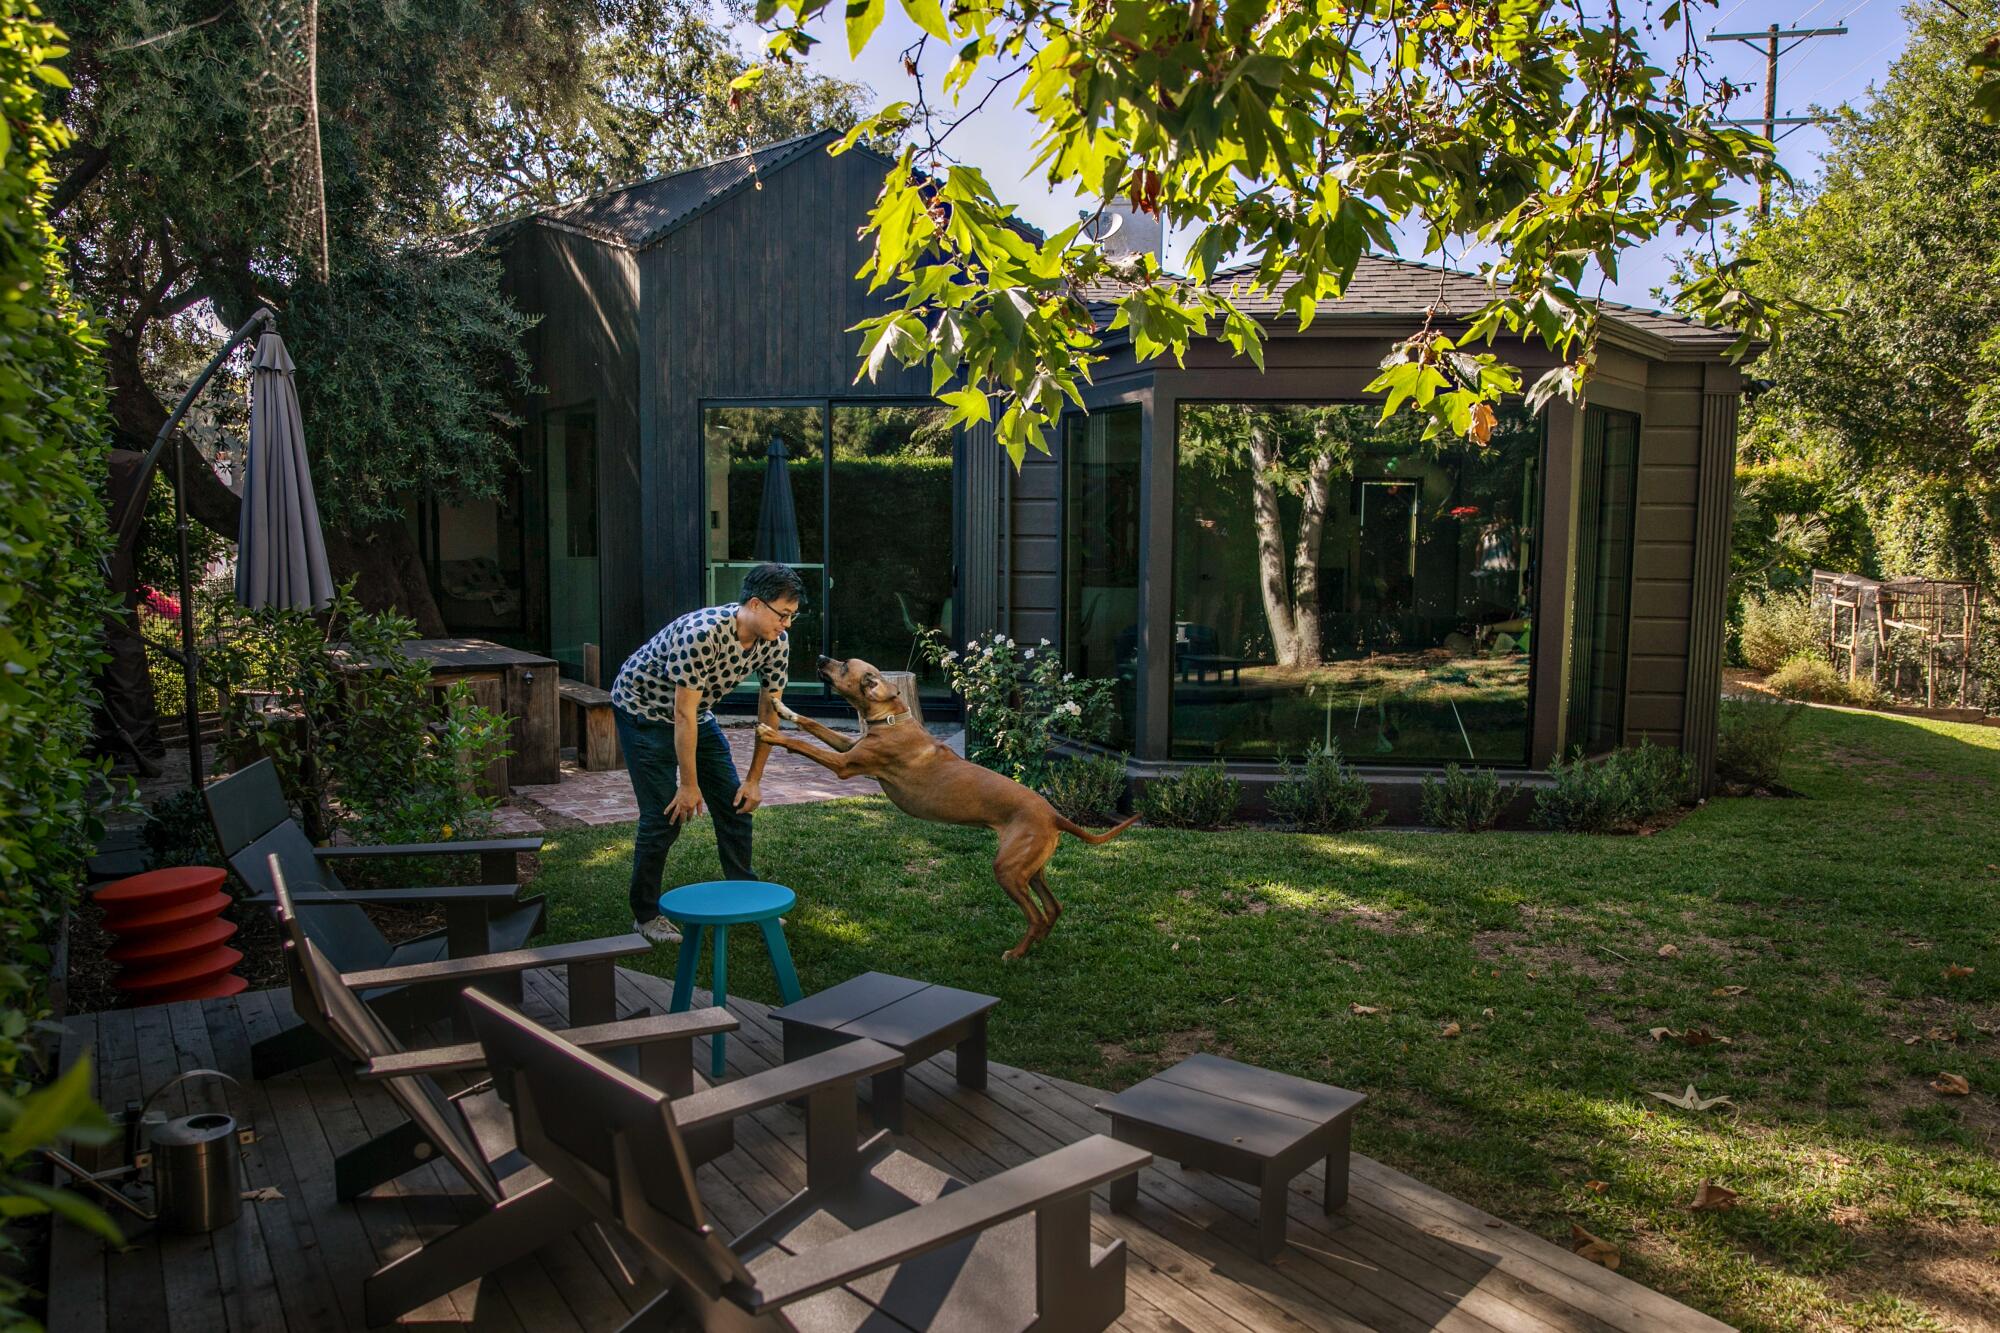 Un homme joue avec un chien dans un jardin.